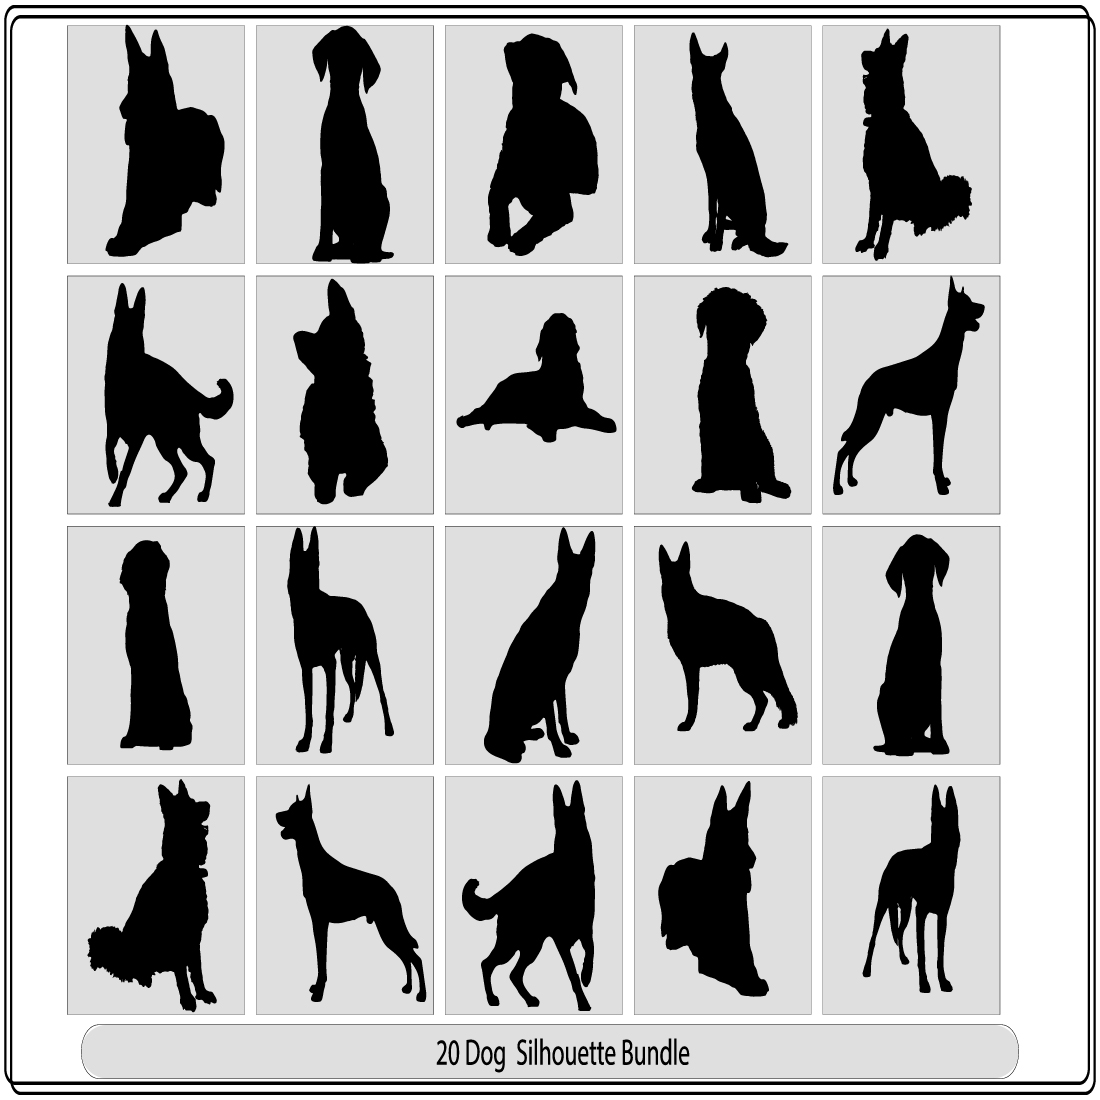 Dog Walking Clipart in Illustrator, EPS, SVG, PSD, JPG, PNG - Download